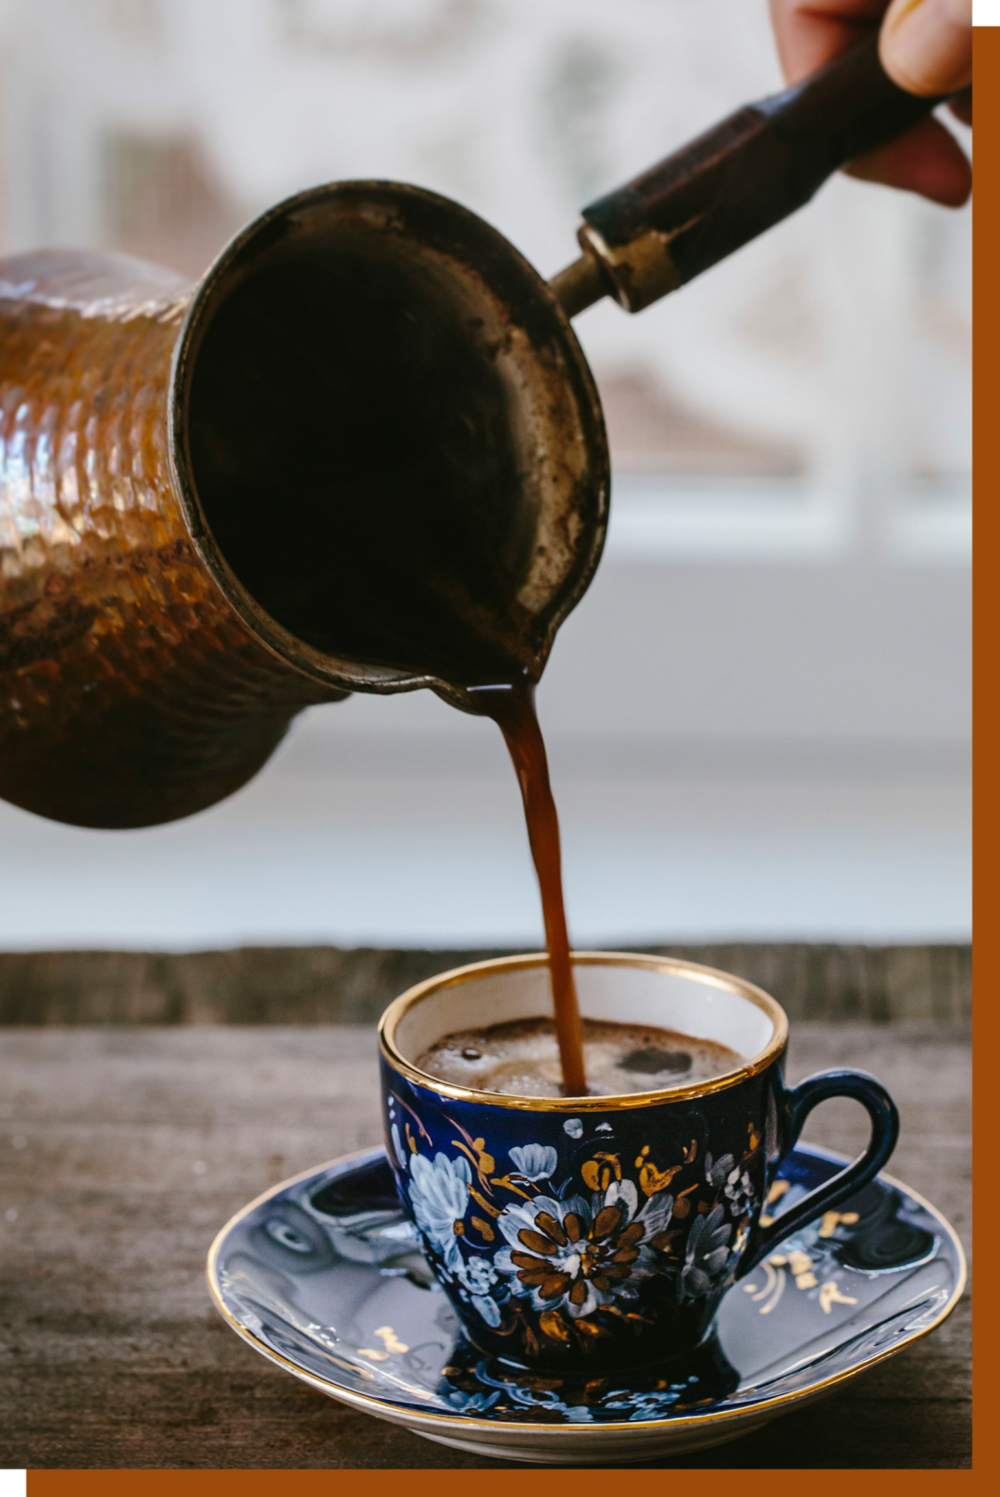 过去阿拉伯人喝的咖啡通常是直接将咖啡粉和水倒入特制小壶中煮制而成的，没有过滤这一说。© thespruceeats.com